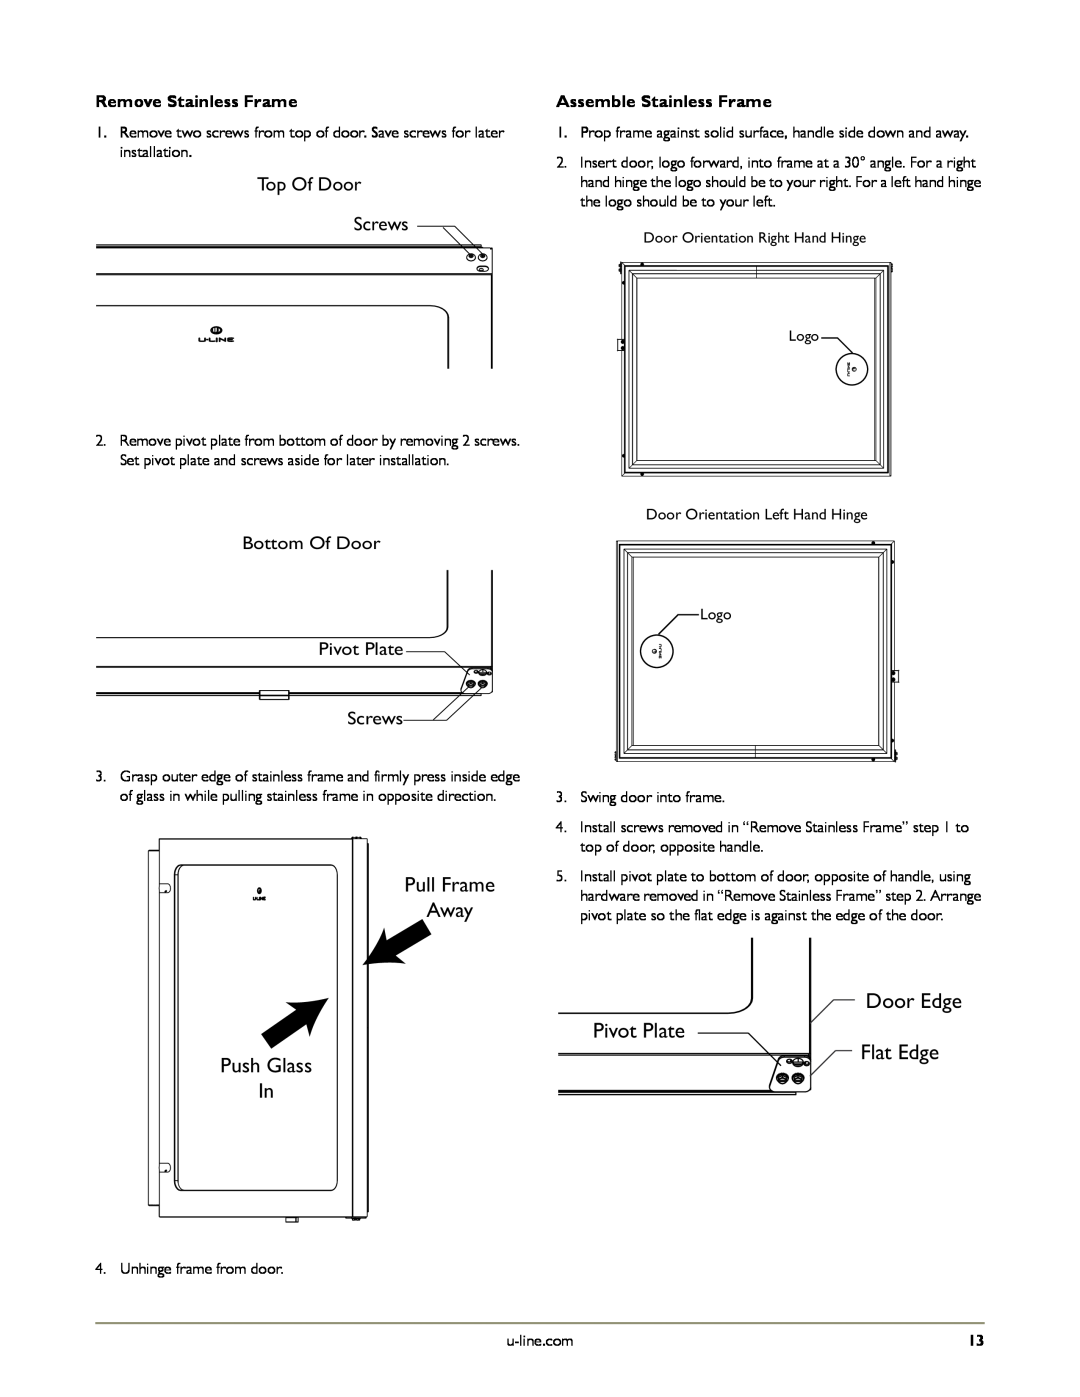 U-Line U-2275ZWCOL-60 manual Top Of Door Screws, Door Edge, Bottom Of Door Pivot Plate Screws, Remove Stainless Frame 